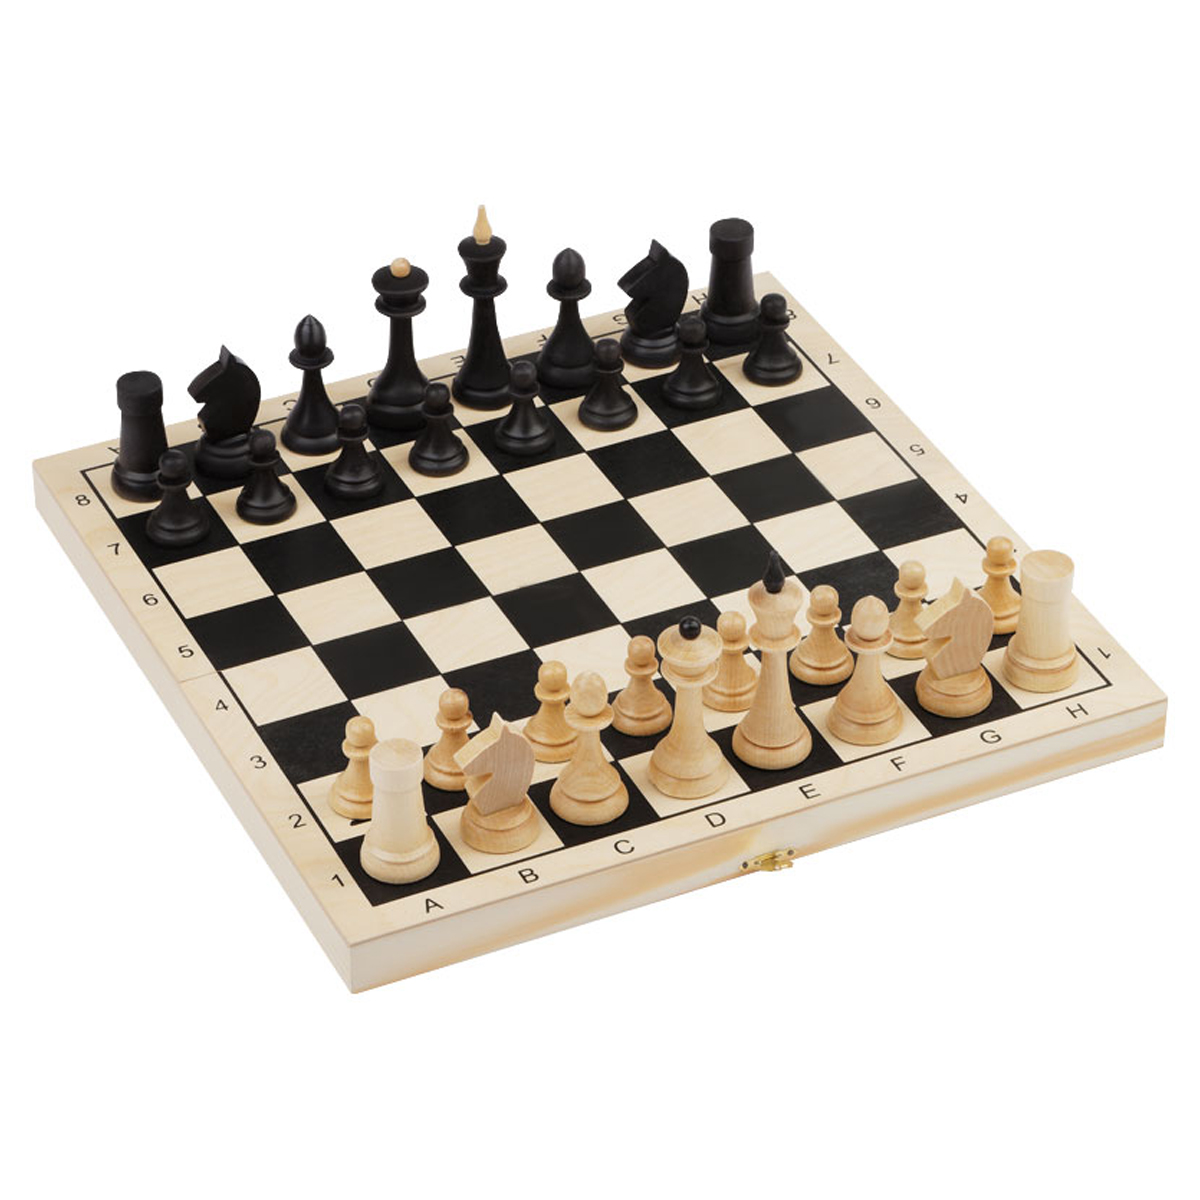 Шахматы ТРИ СОВЫ турнирные, деревянные с деревянной доской 40*40см